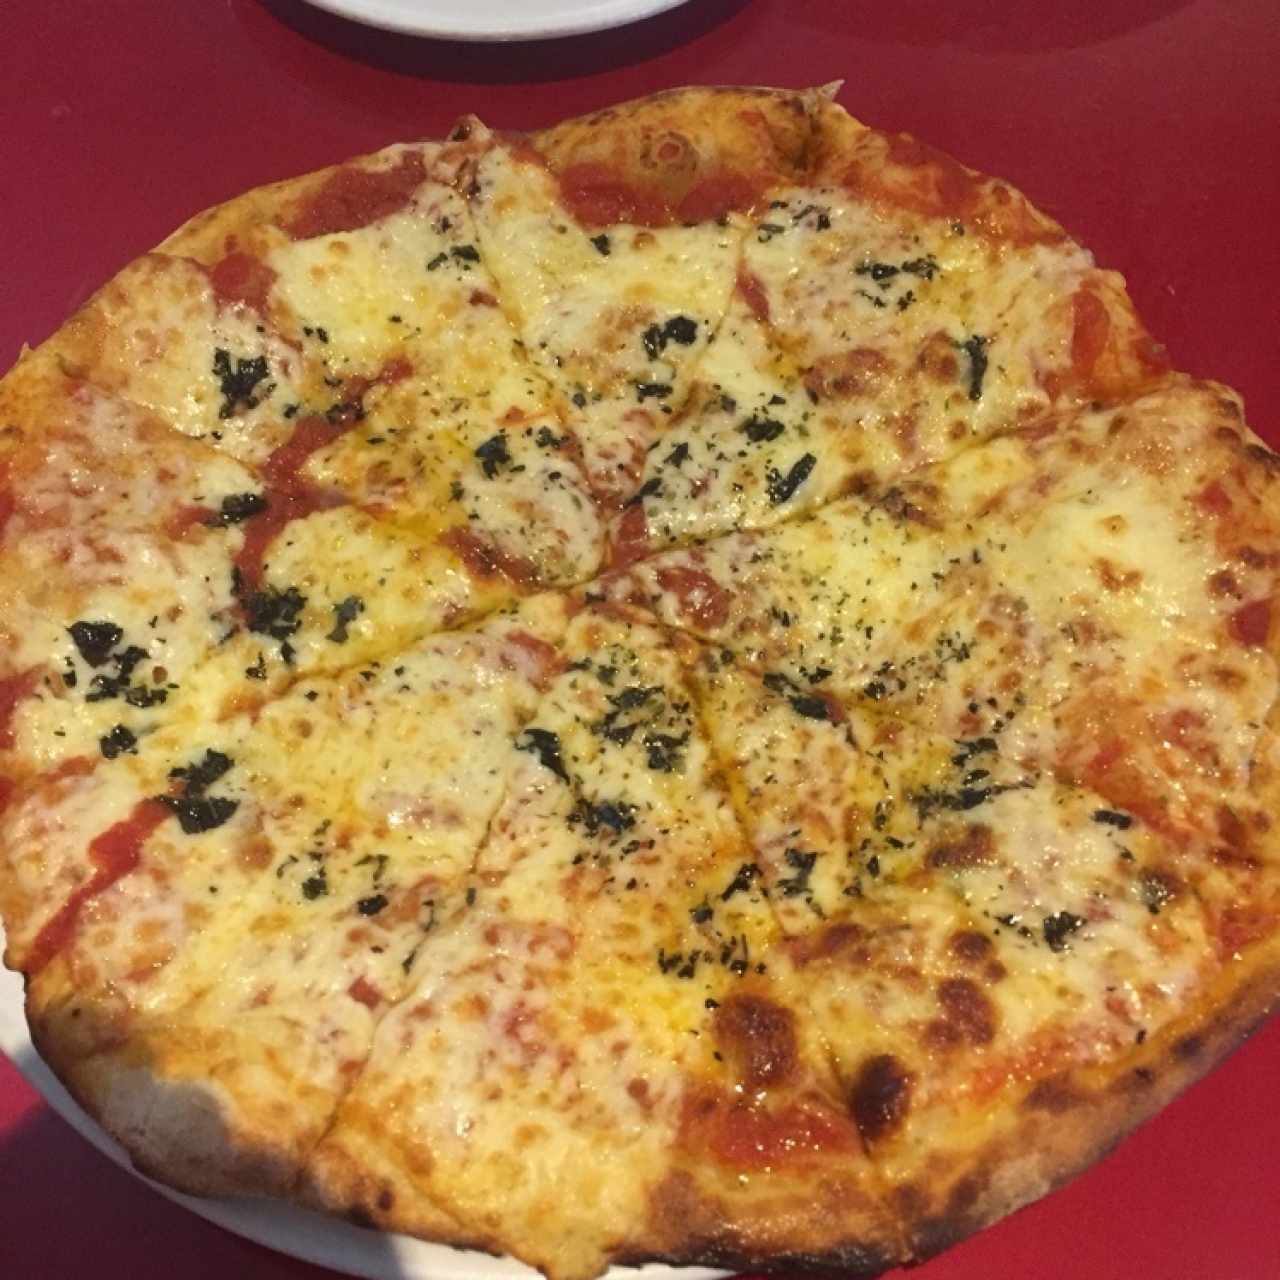 pizza napolitana